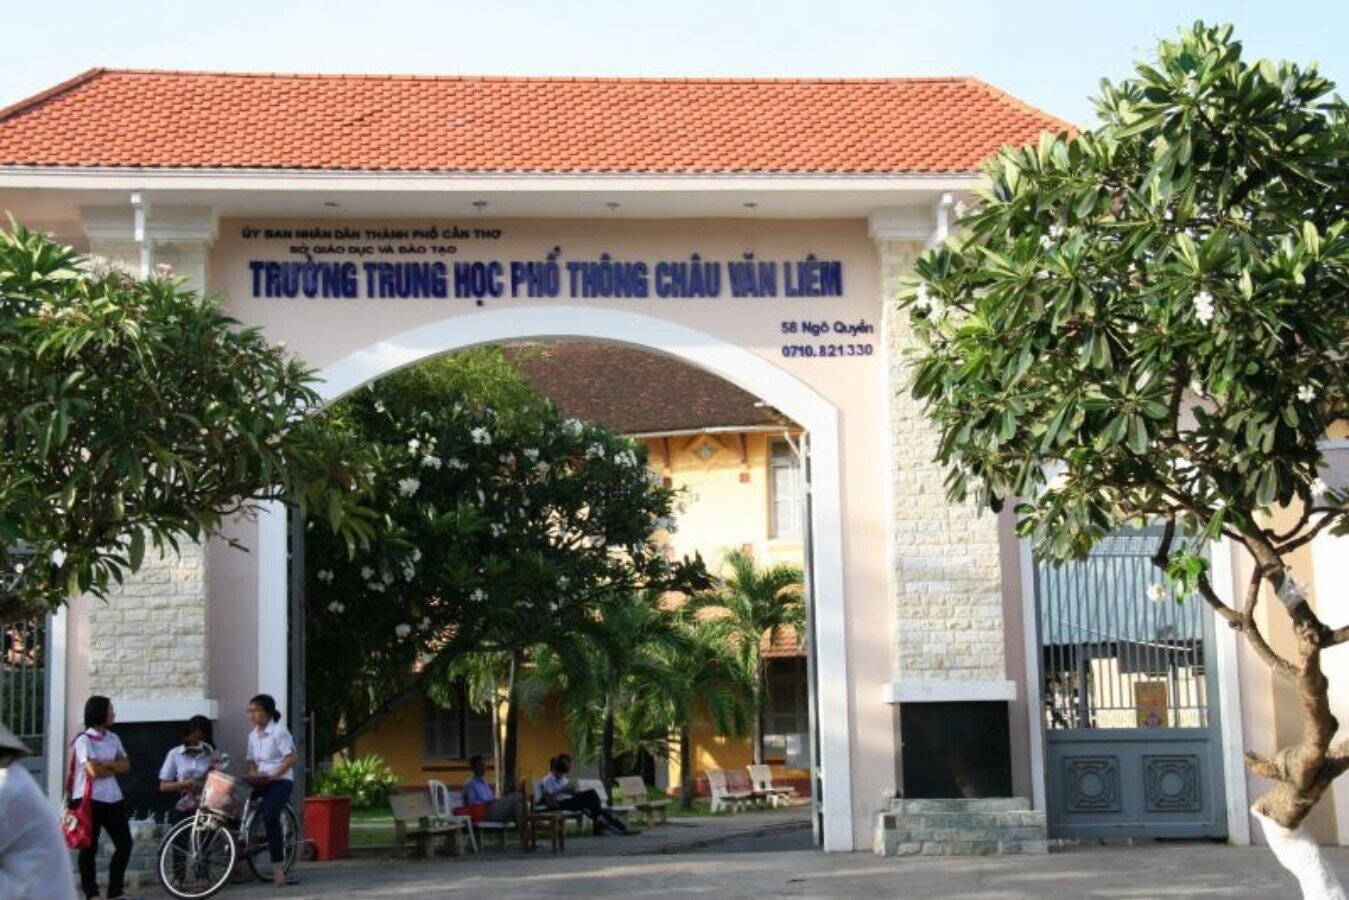 Trường THPT Châu Văn Liêm - nơi xảy ra sự cố trong giờ học thực hành khiến 5 học sinh bị thương.